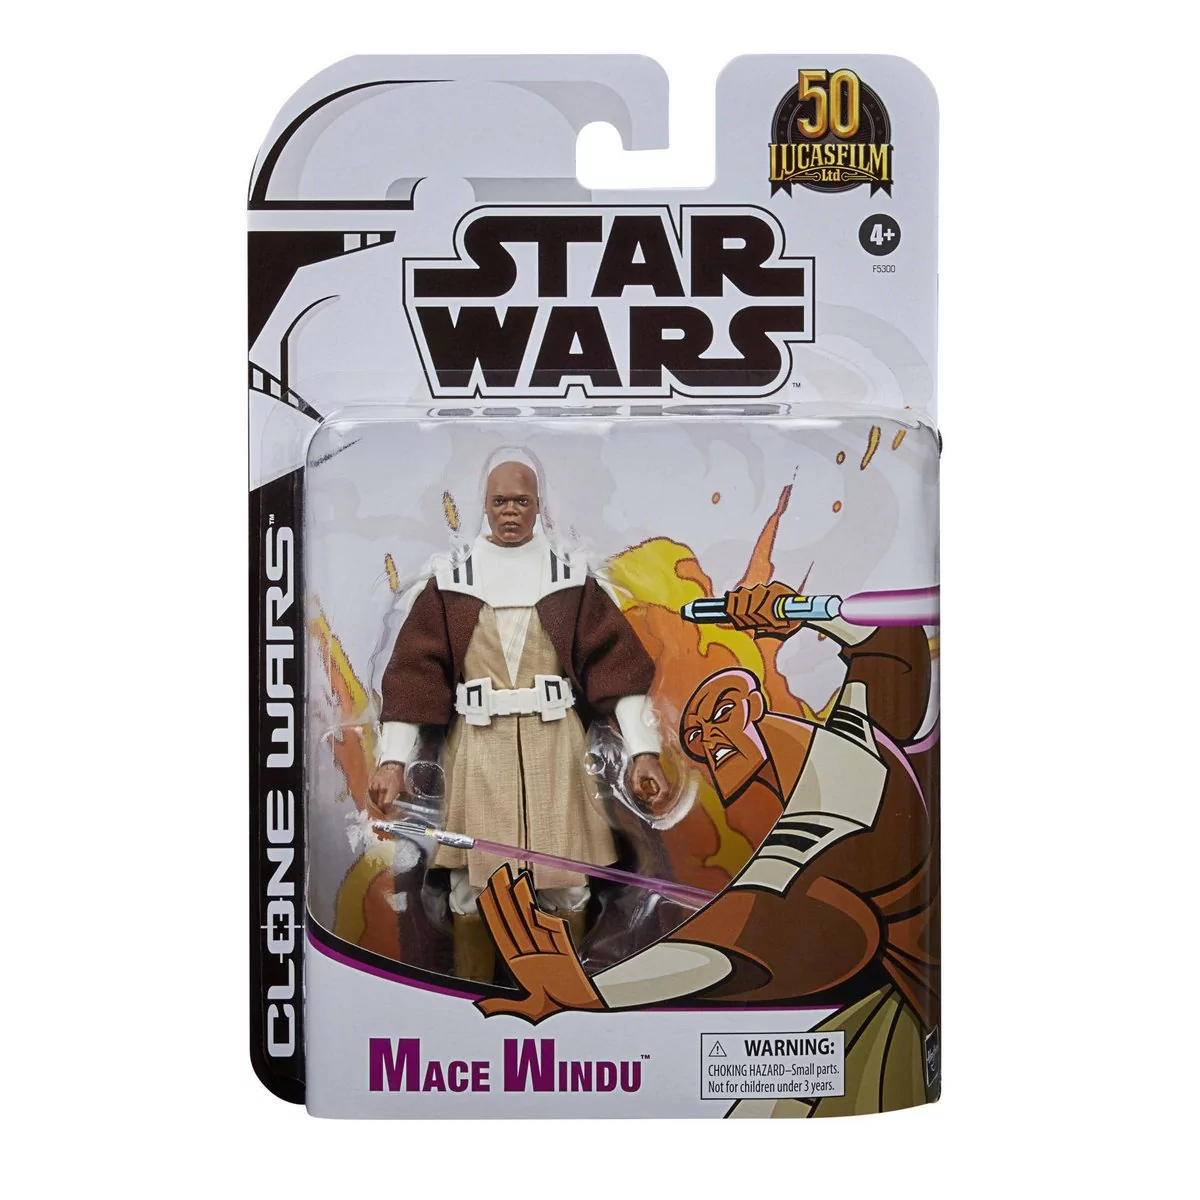 MACE WINDU Figurka 15 Star Wars Clone Wars